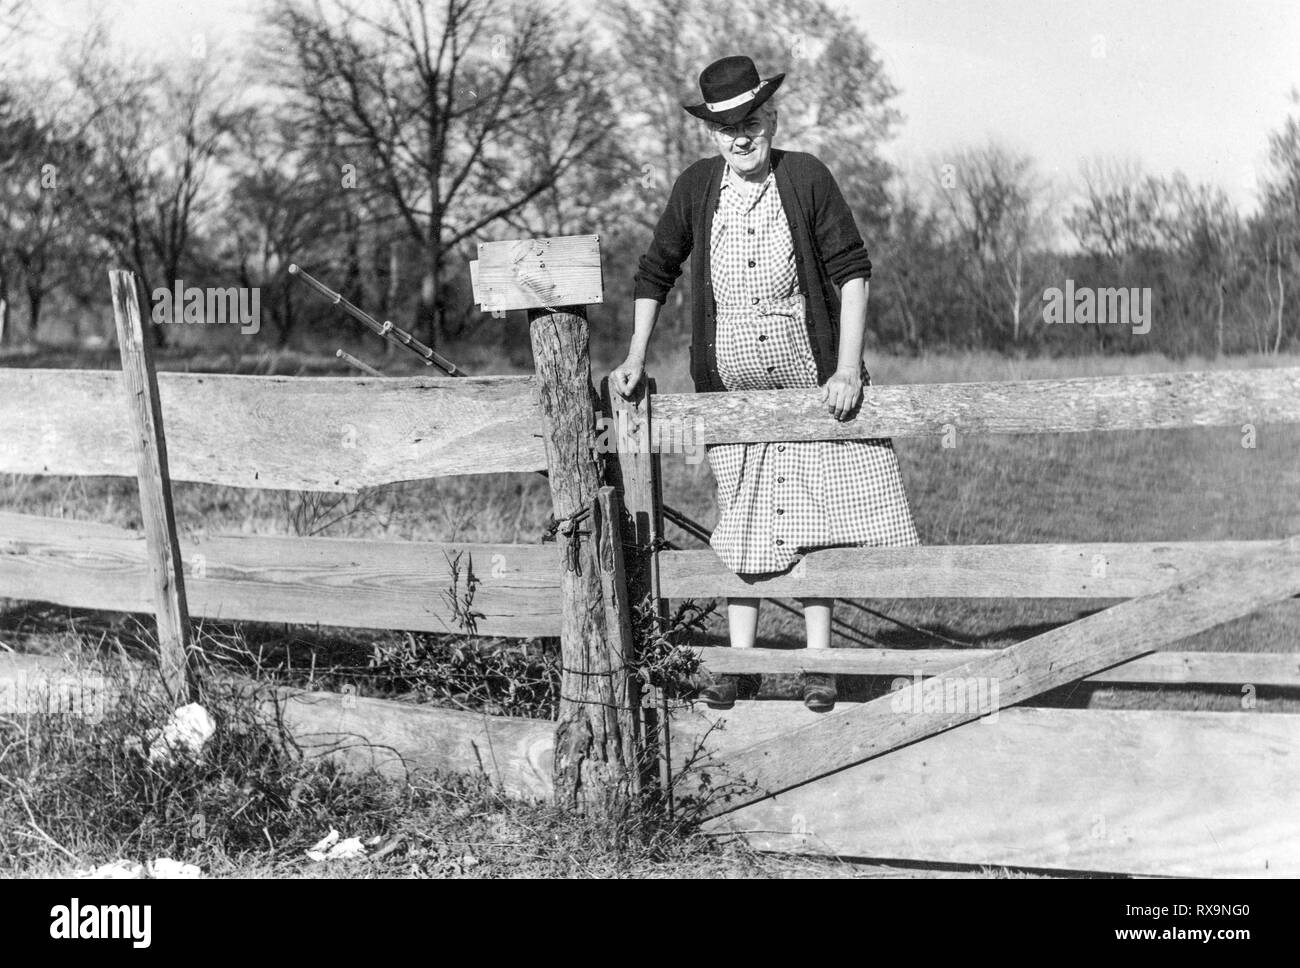 Horizontal noir et blanc d'une vieille dame l'ascension d'une clôture avec ses cannes à pêche au début des années 1900. Ancien numérisé d'une photo de famille. Peut conta Banque D'Images